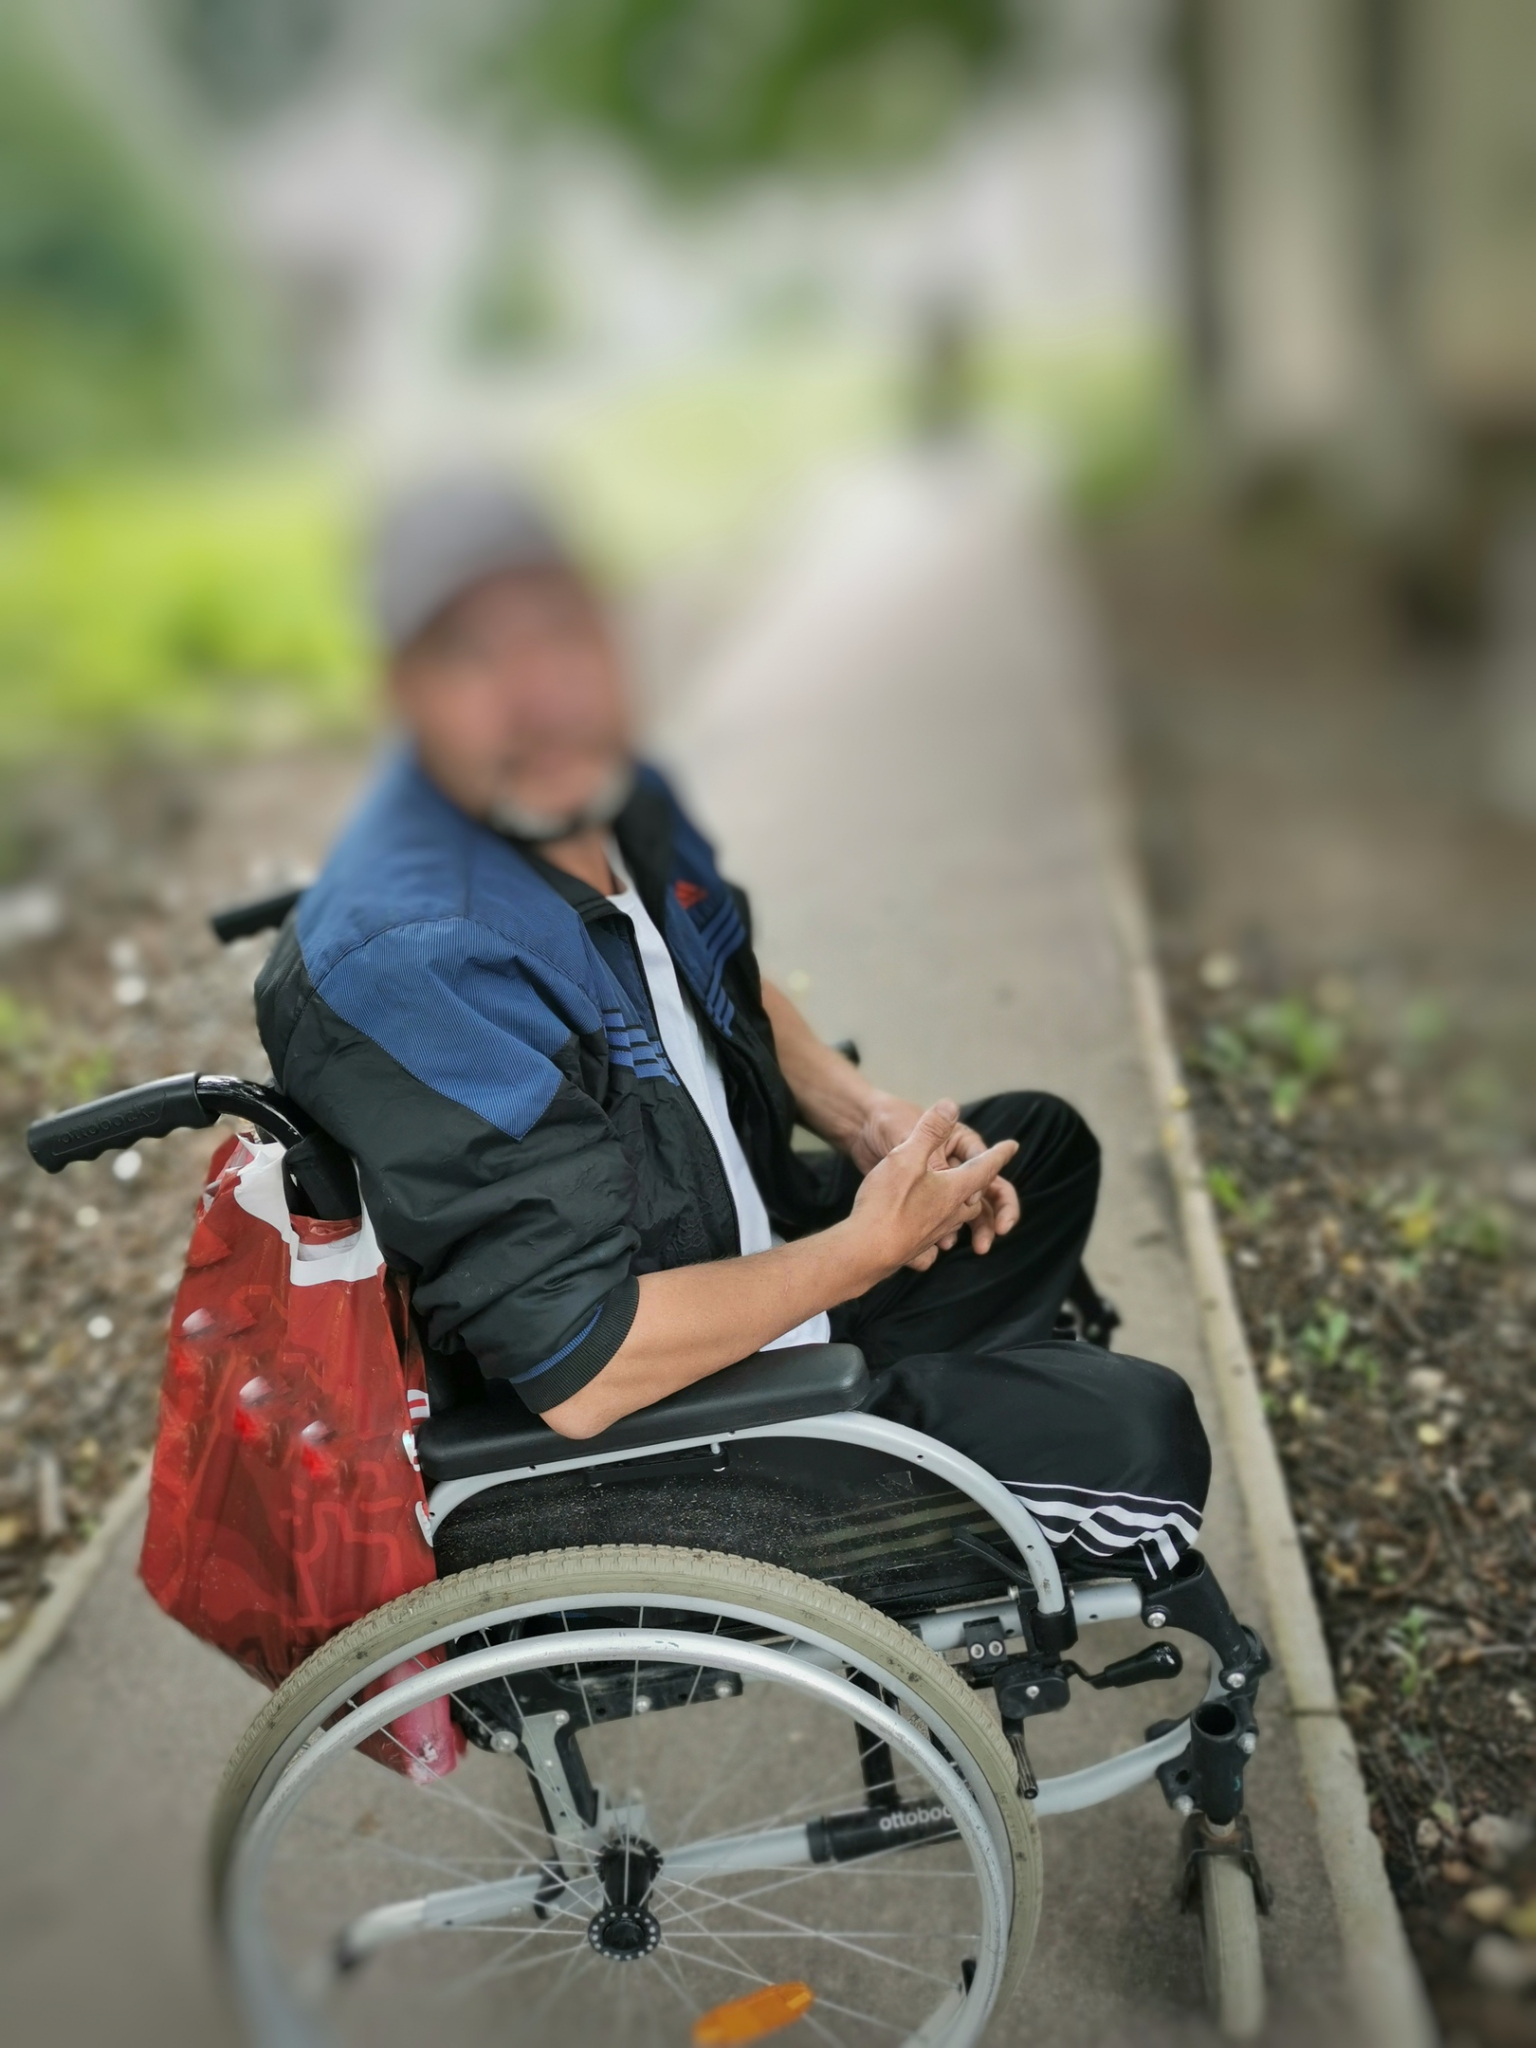 В Сыктывкаре инвалиды-колясочники просят у прохожих деньги на еду, но покупают алкоголь